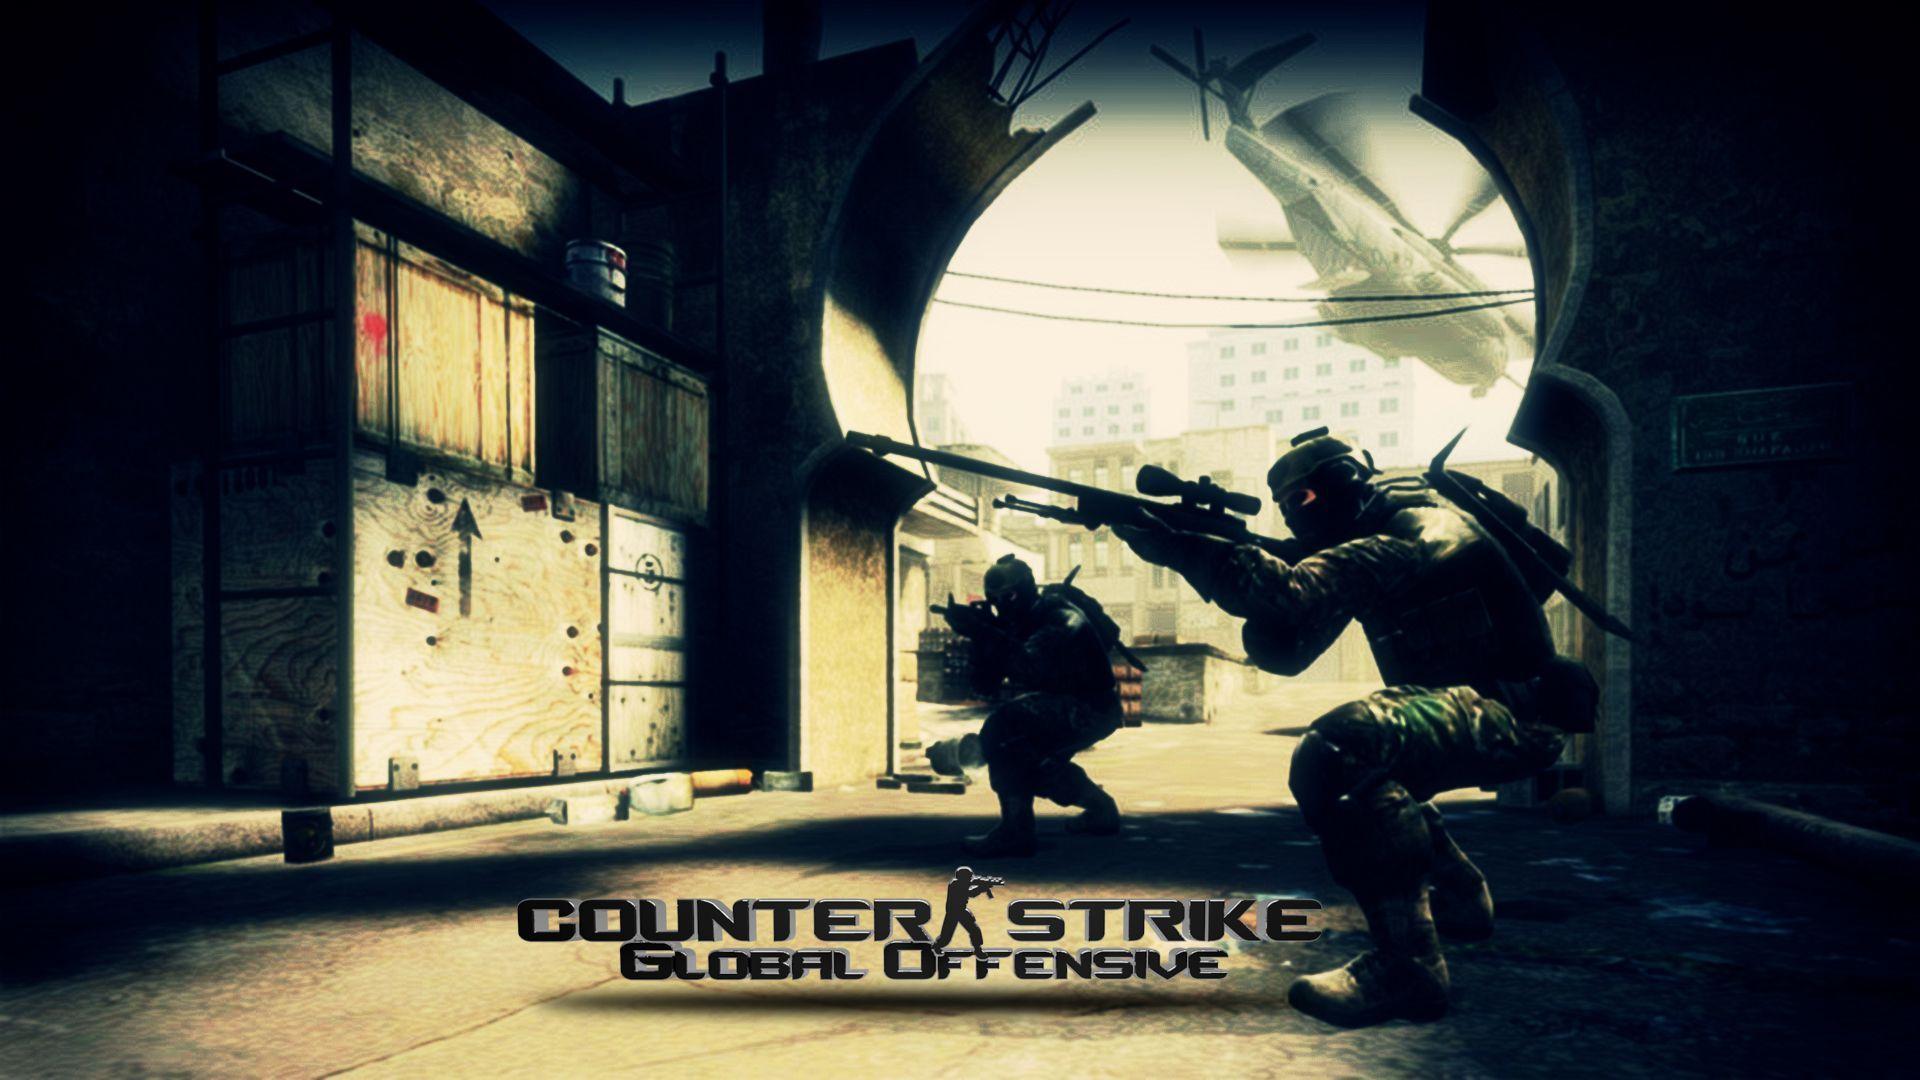 CS:GO Strike: Global Offensive Wallpaper